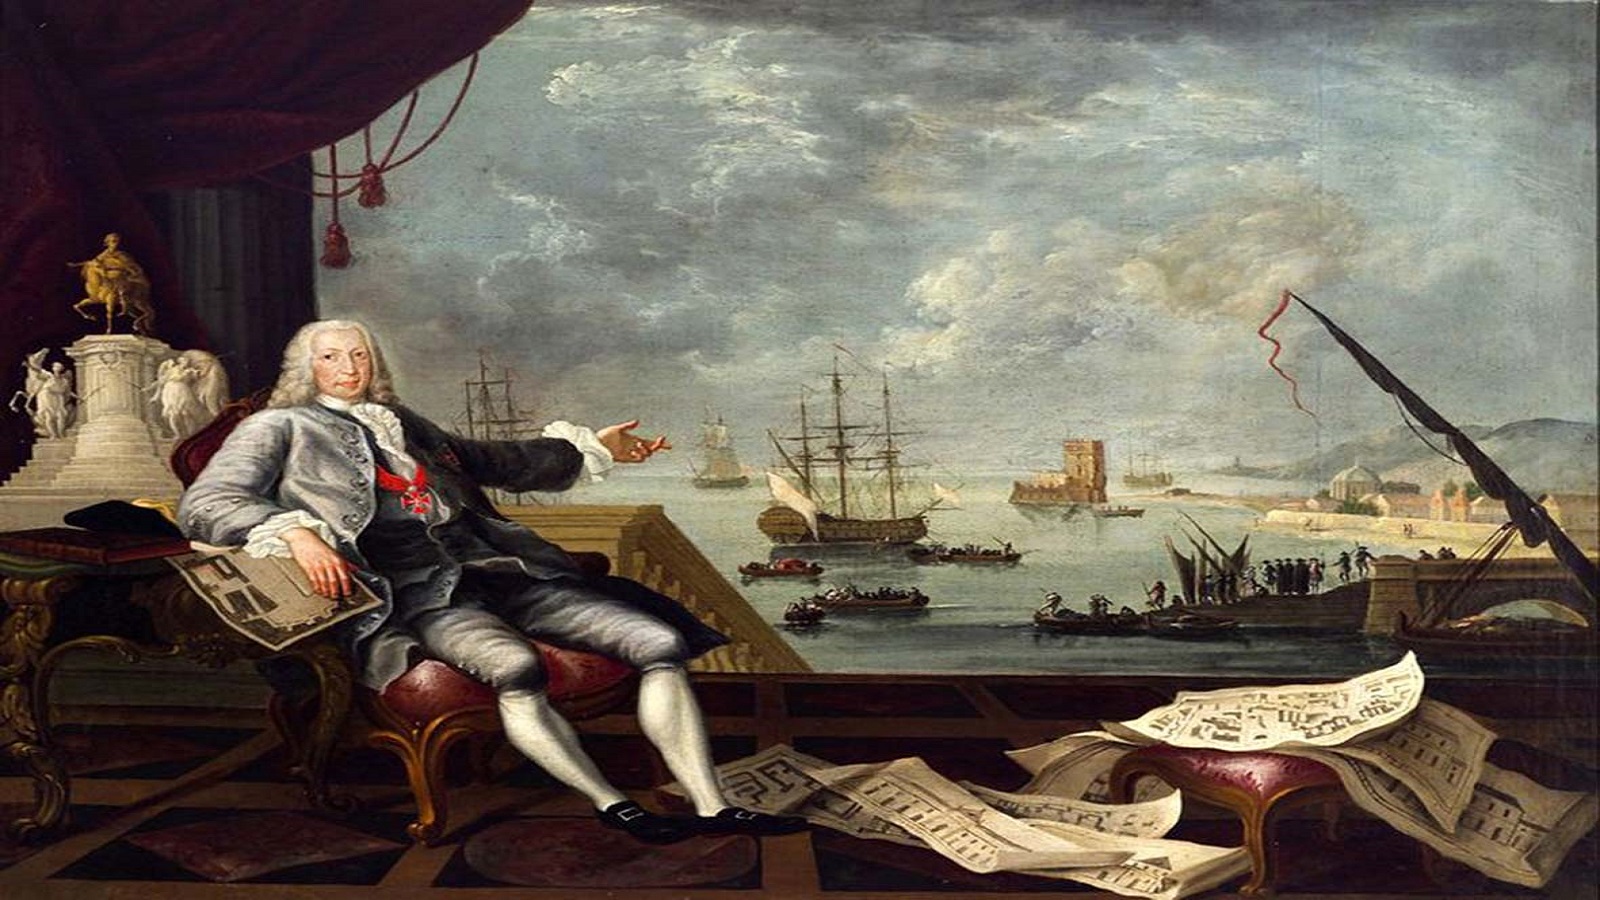 باني لشبونة، ماركيز دو بومبال، في زيتية أنجزها الفنان الفرنسي لويس ميشال فان لوو في 1776